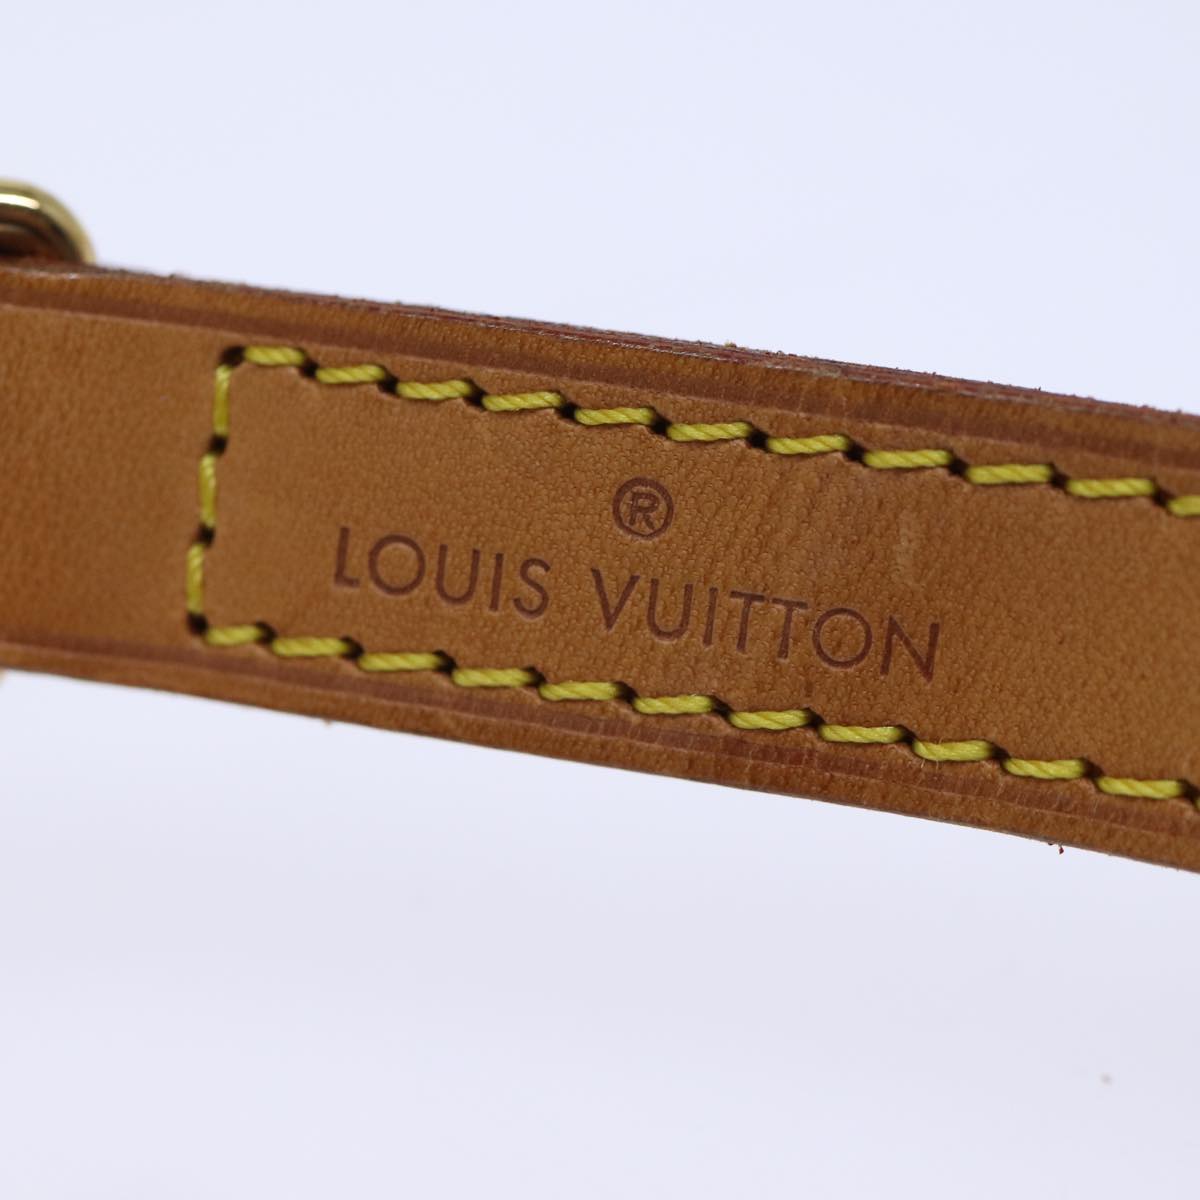 LOUIS VUITTON Shoulder Strap Leather 44.1"" Beige LV Auth 73273